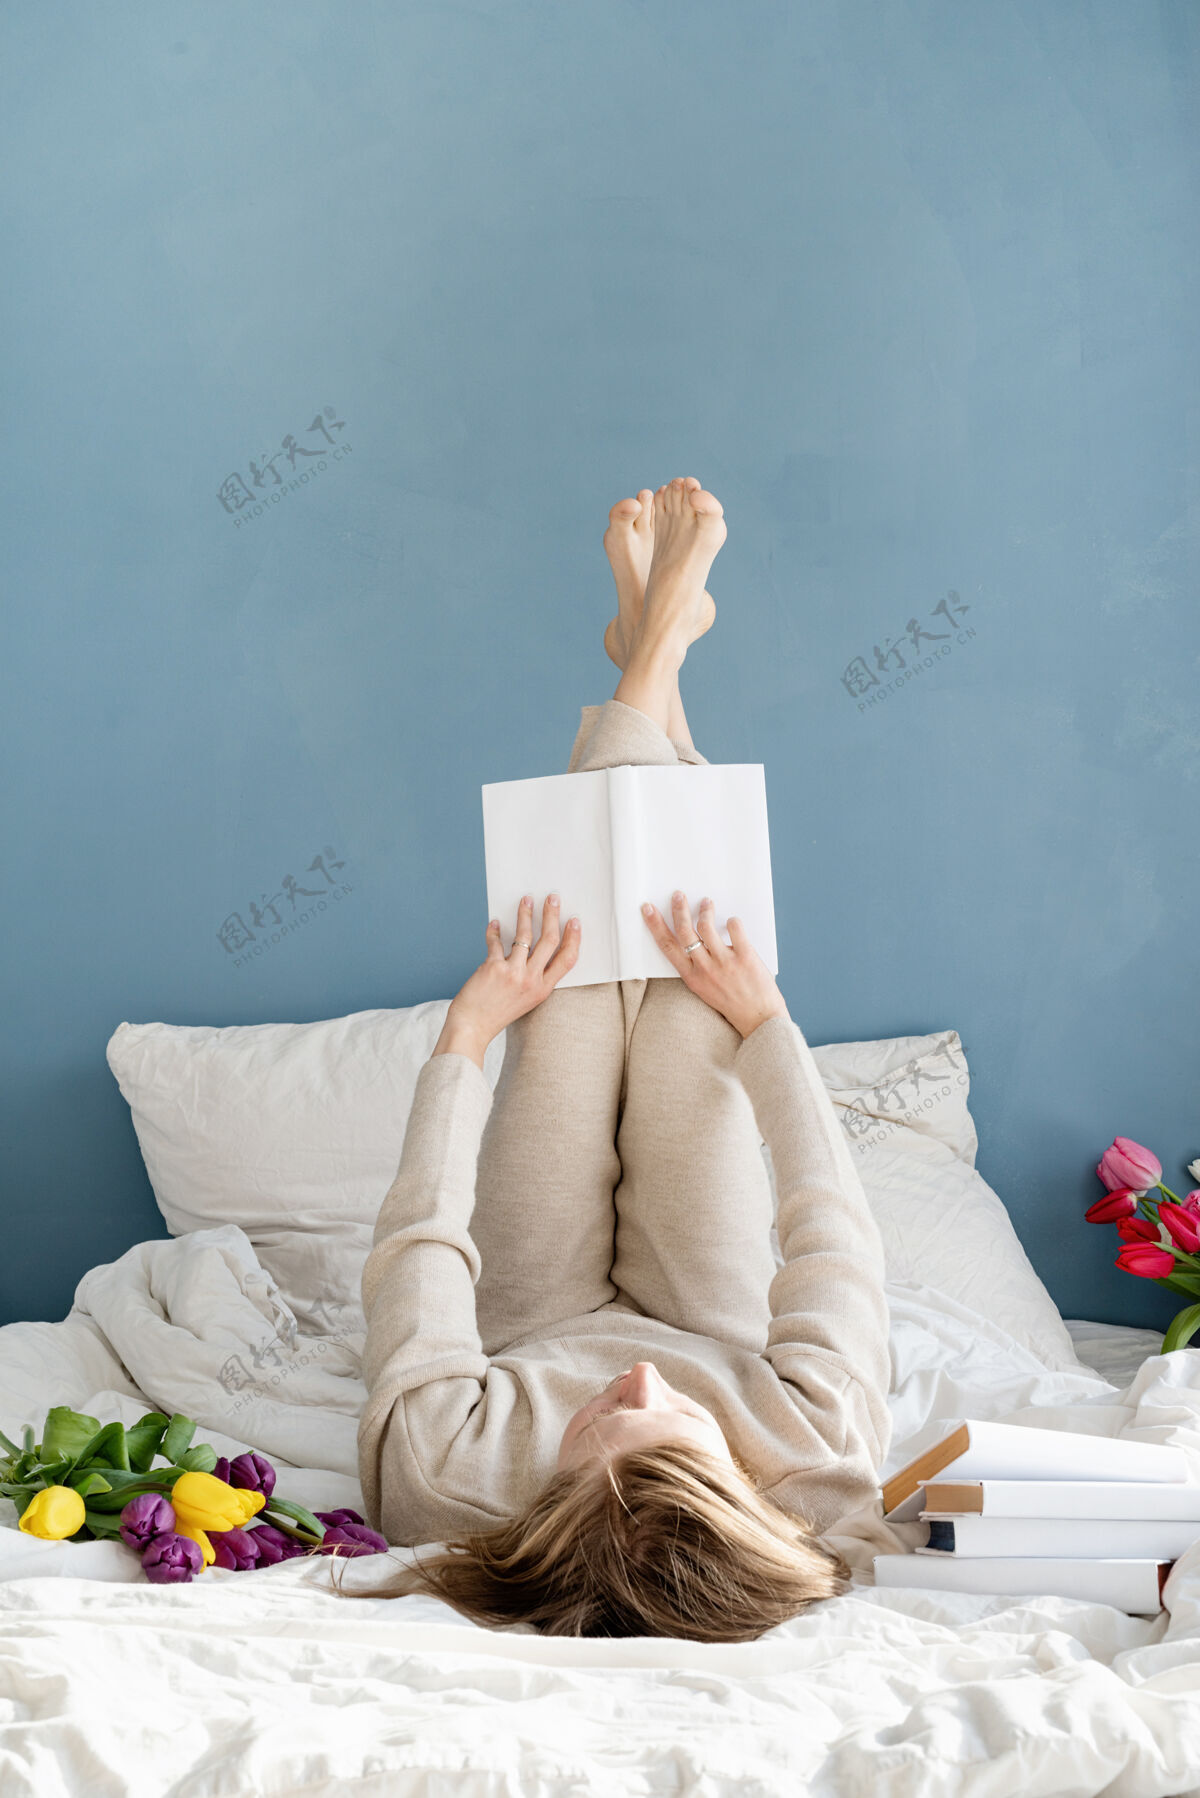 情人节快乐微笑的女人穿着睡衣坐在床上 愉快地赏花看书笑浪漫微笑